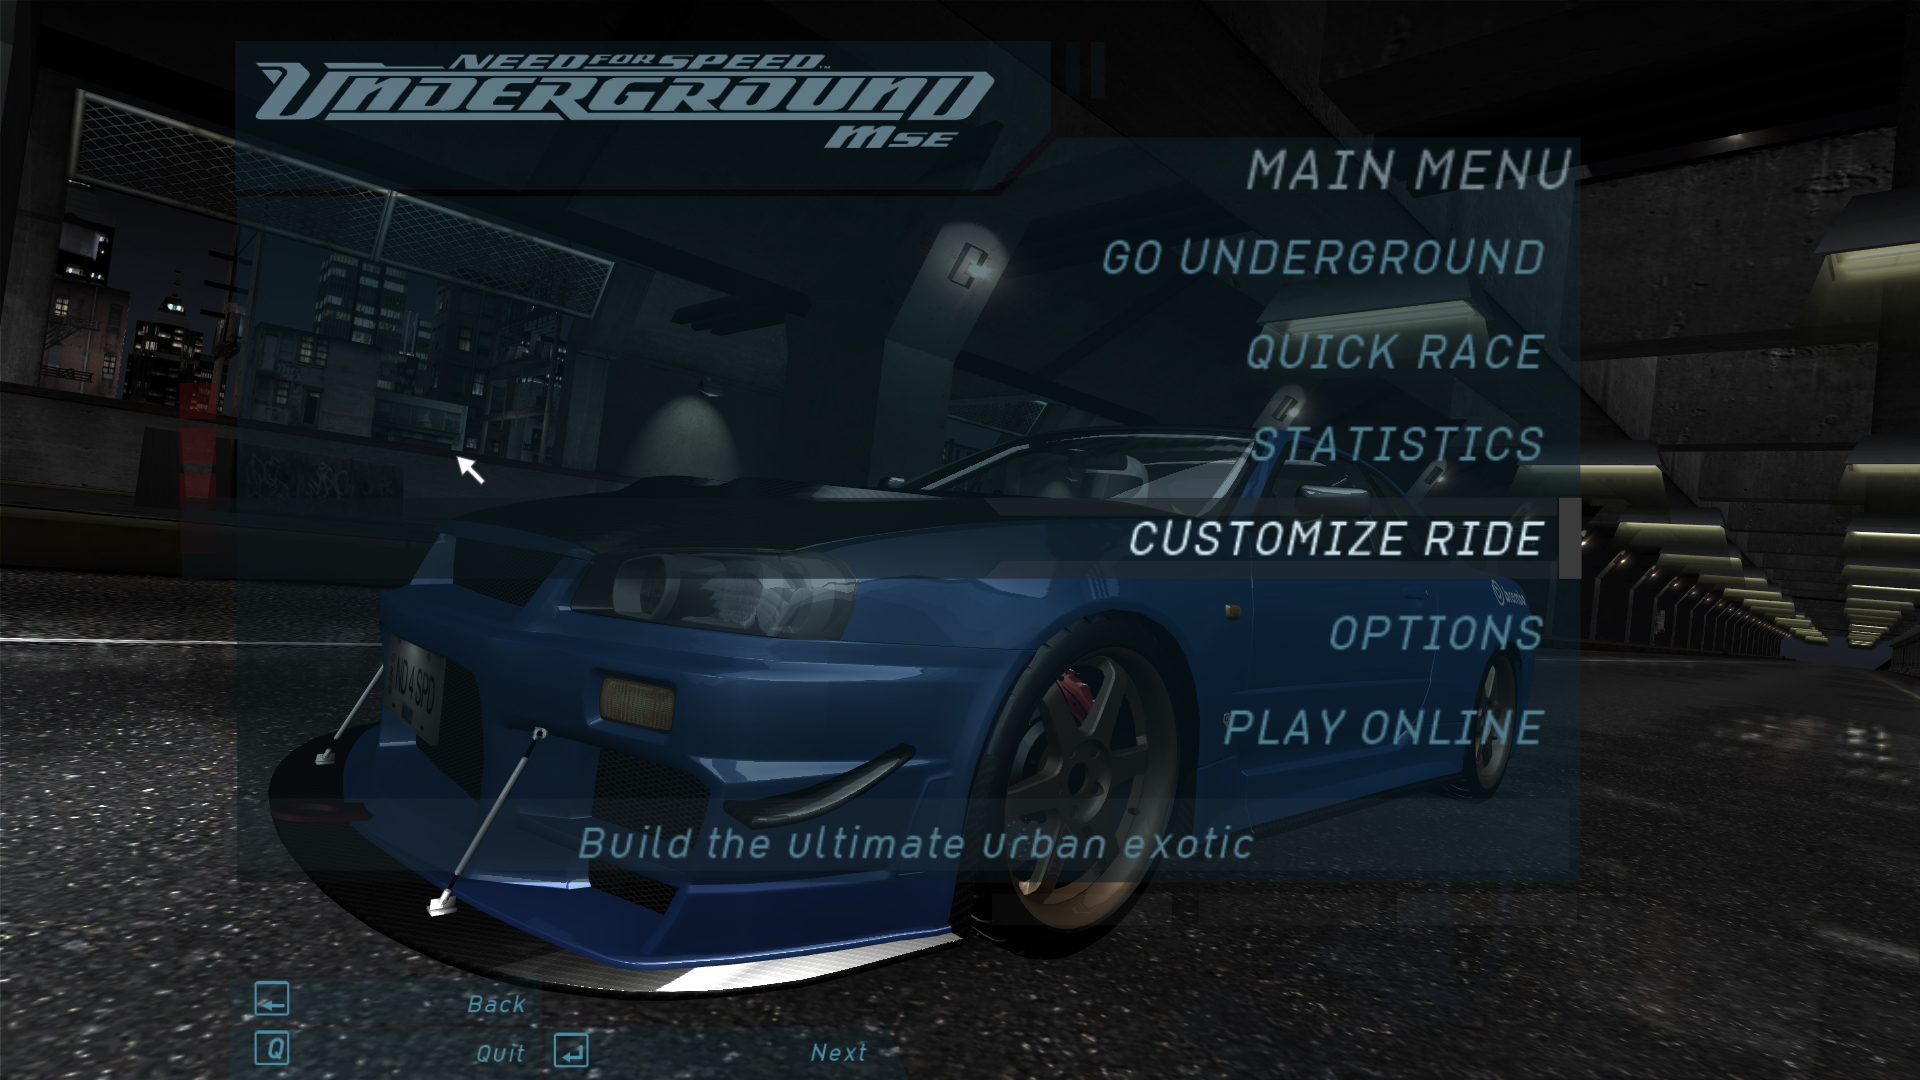 Песня из игры андеграунд. Underground 2 меню. NFS Underground 2 menu. Need for Speed Underground 2 menu. Нфс андеграунд 2 меню.